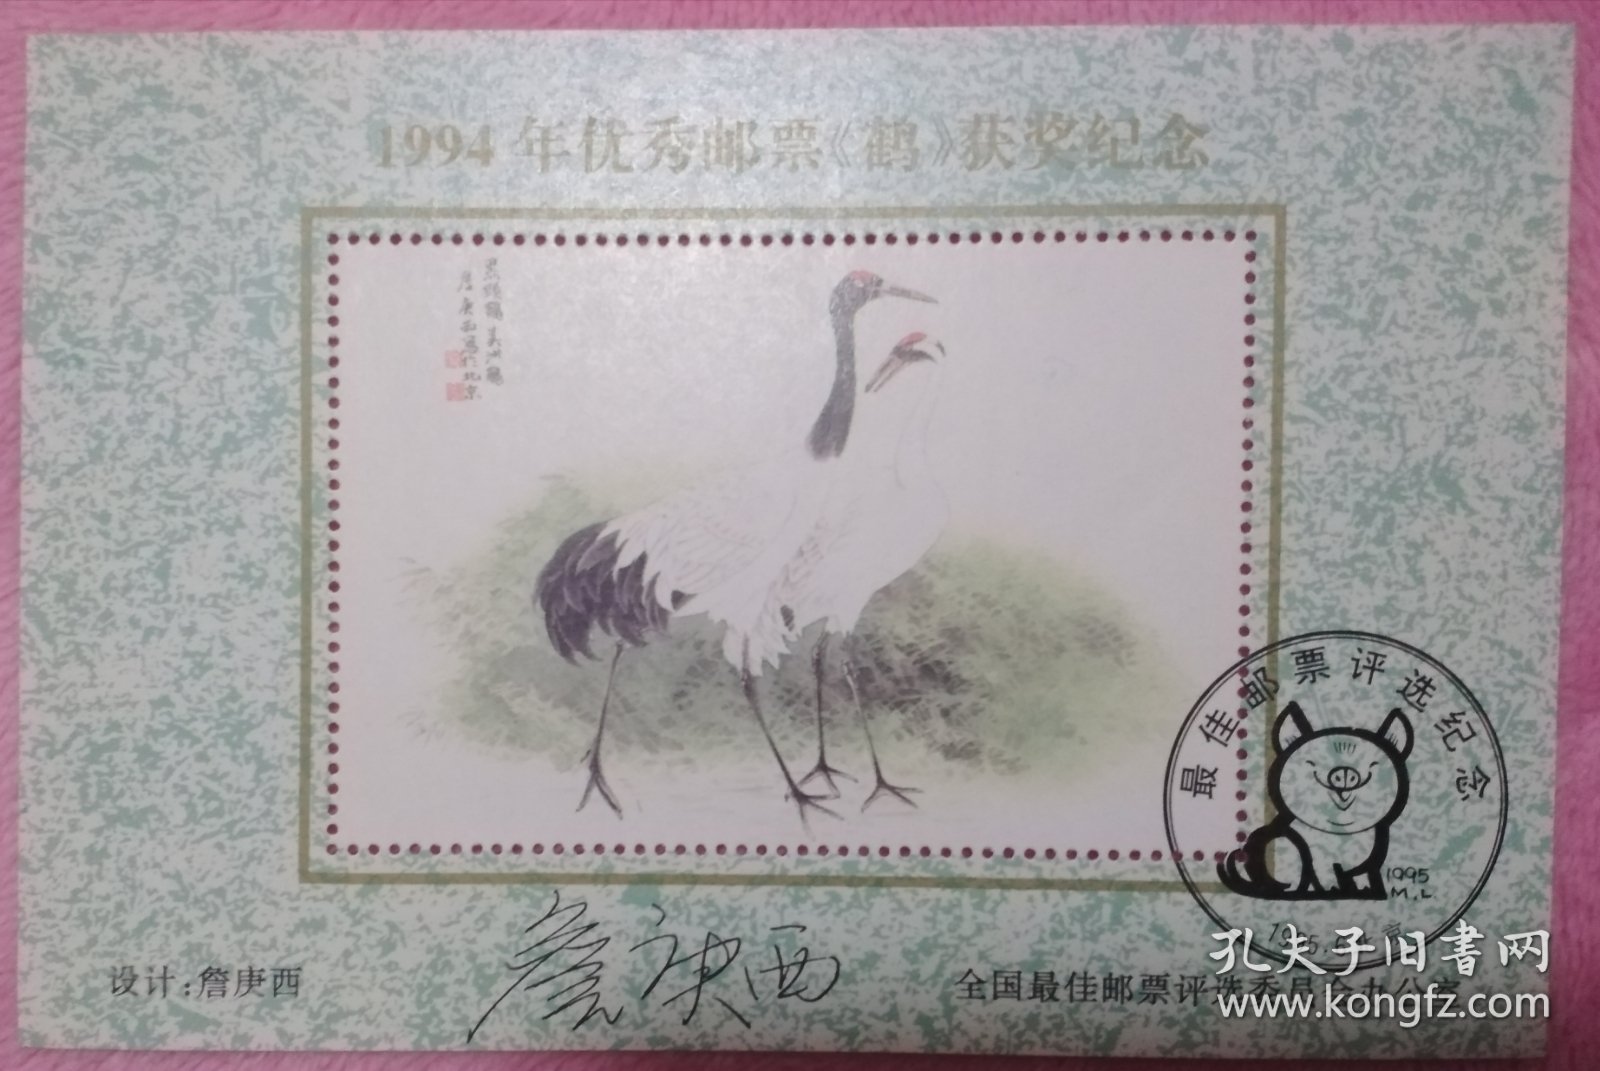 邮票设计家詹庚西亲笔签名94年优秀邮票评选颁奖纪念张